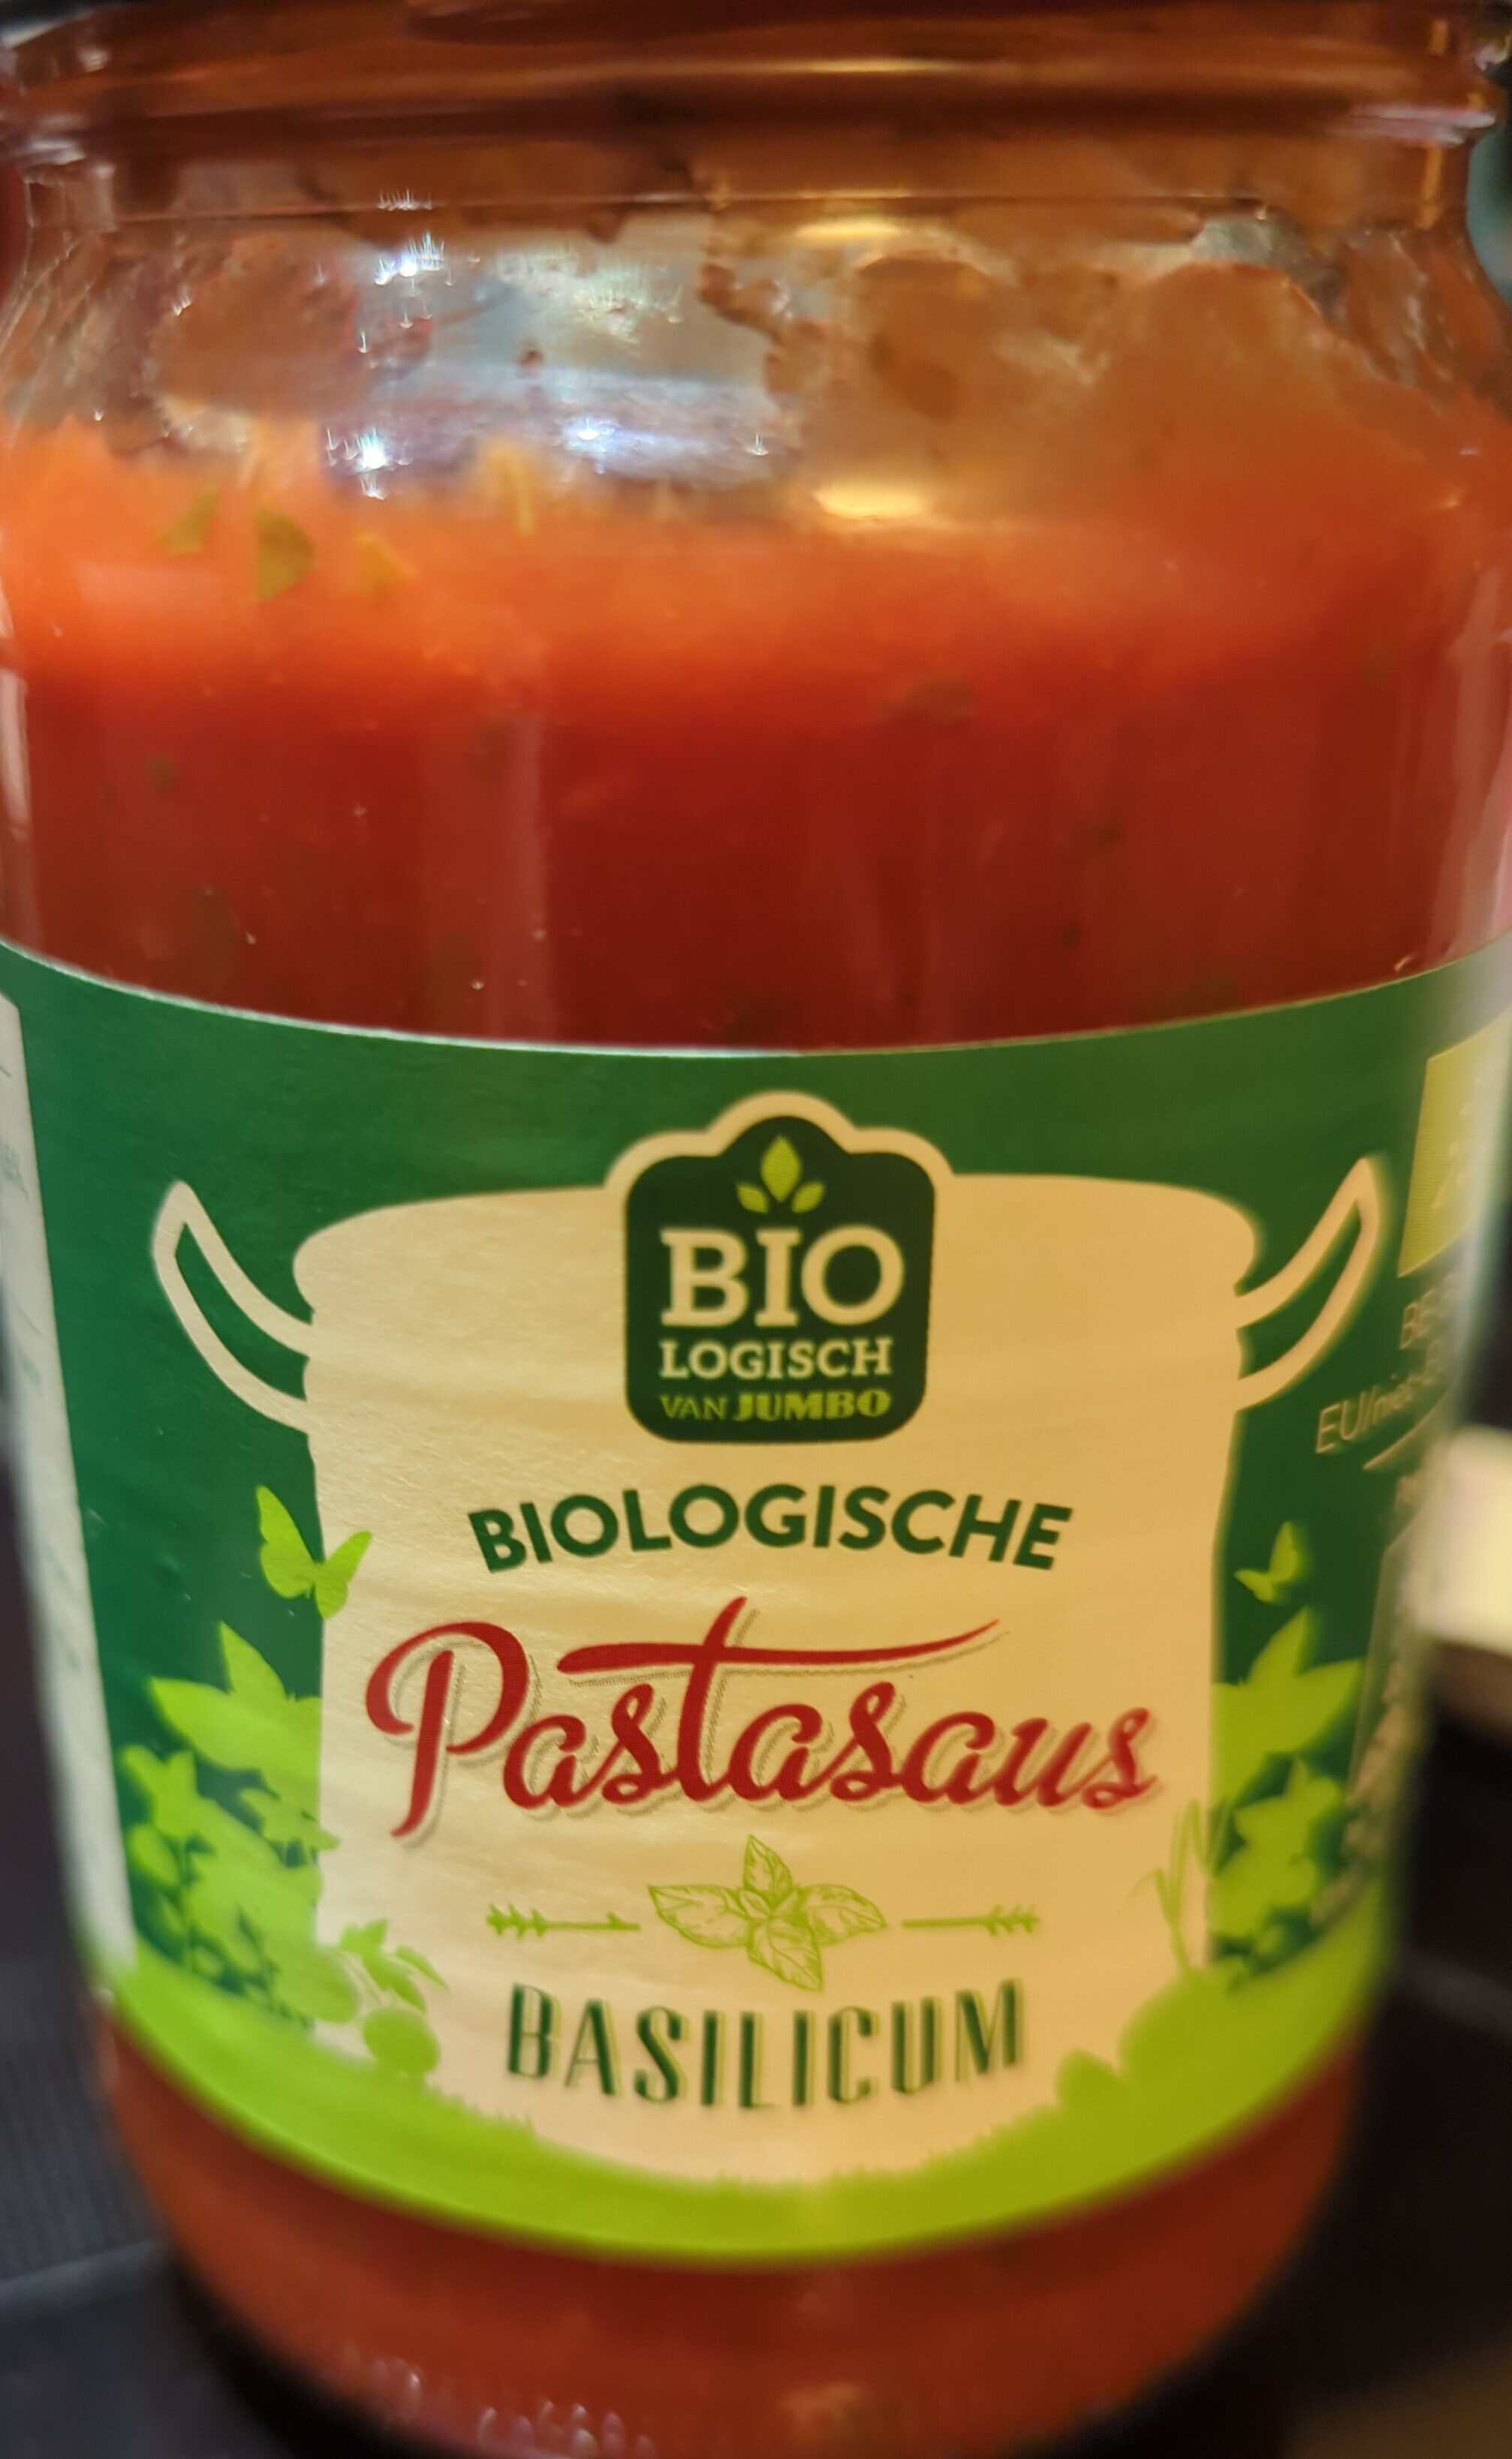 Biologische Basilicum Pastasaus - Product